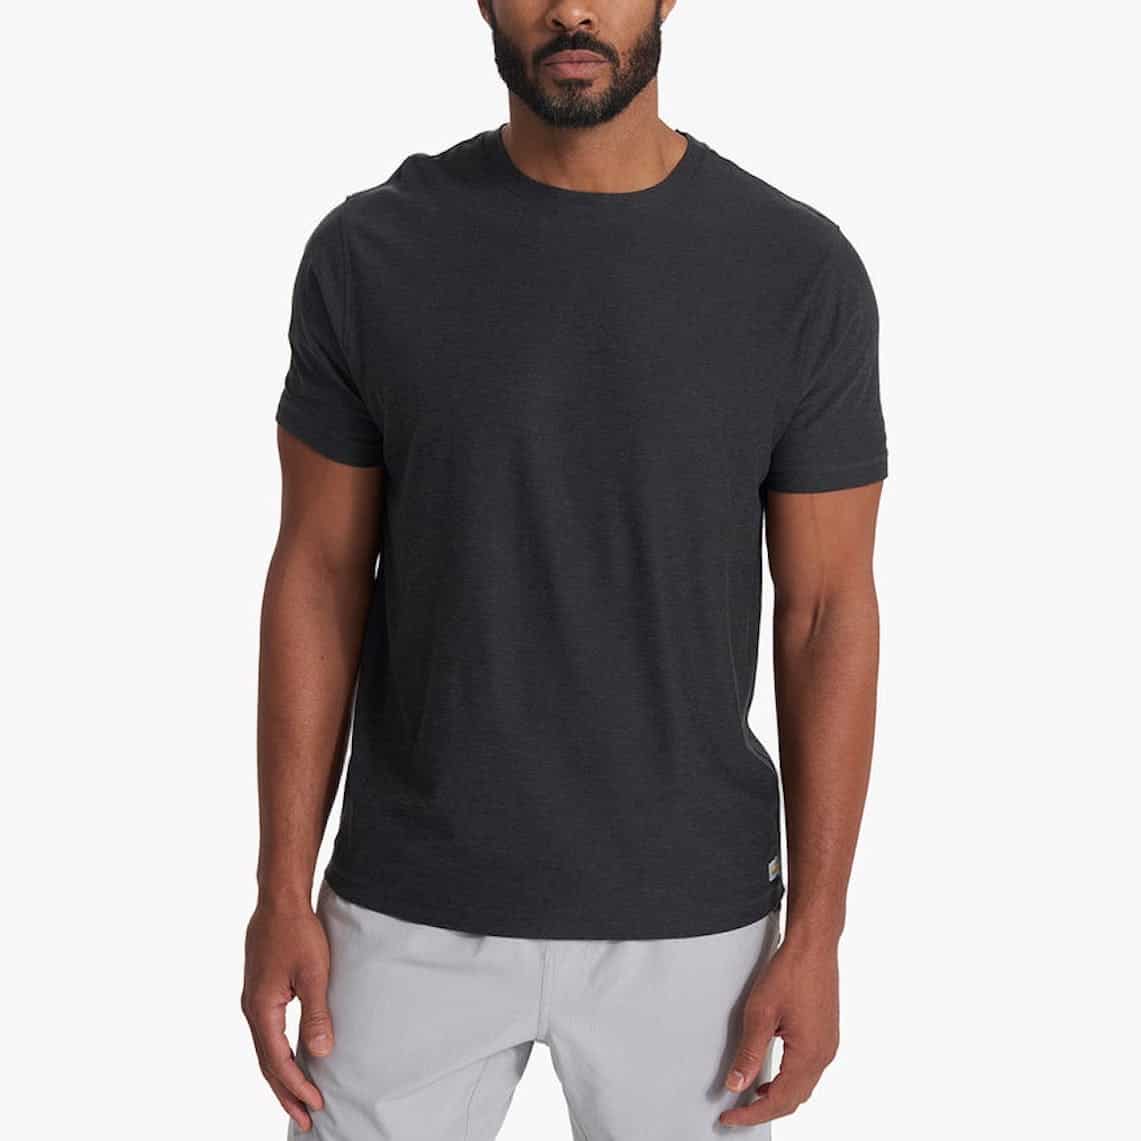 Men's Basic Overly Over Sized T-Shirt  Oversized shirt men, Men shirt  style, Best t shirt brands